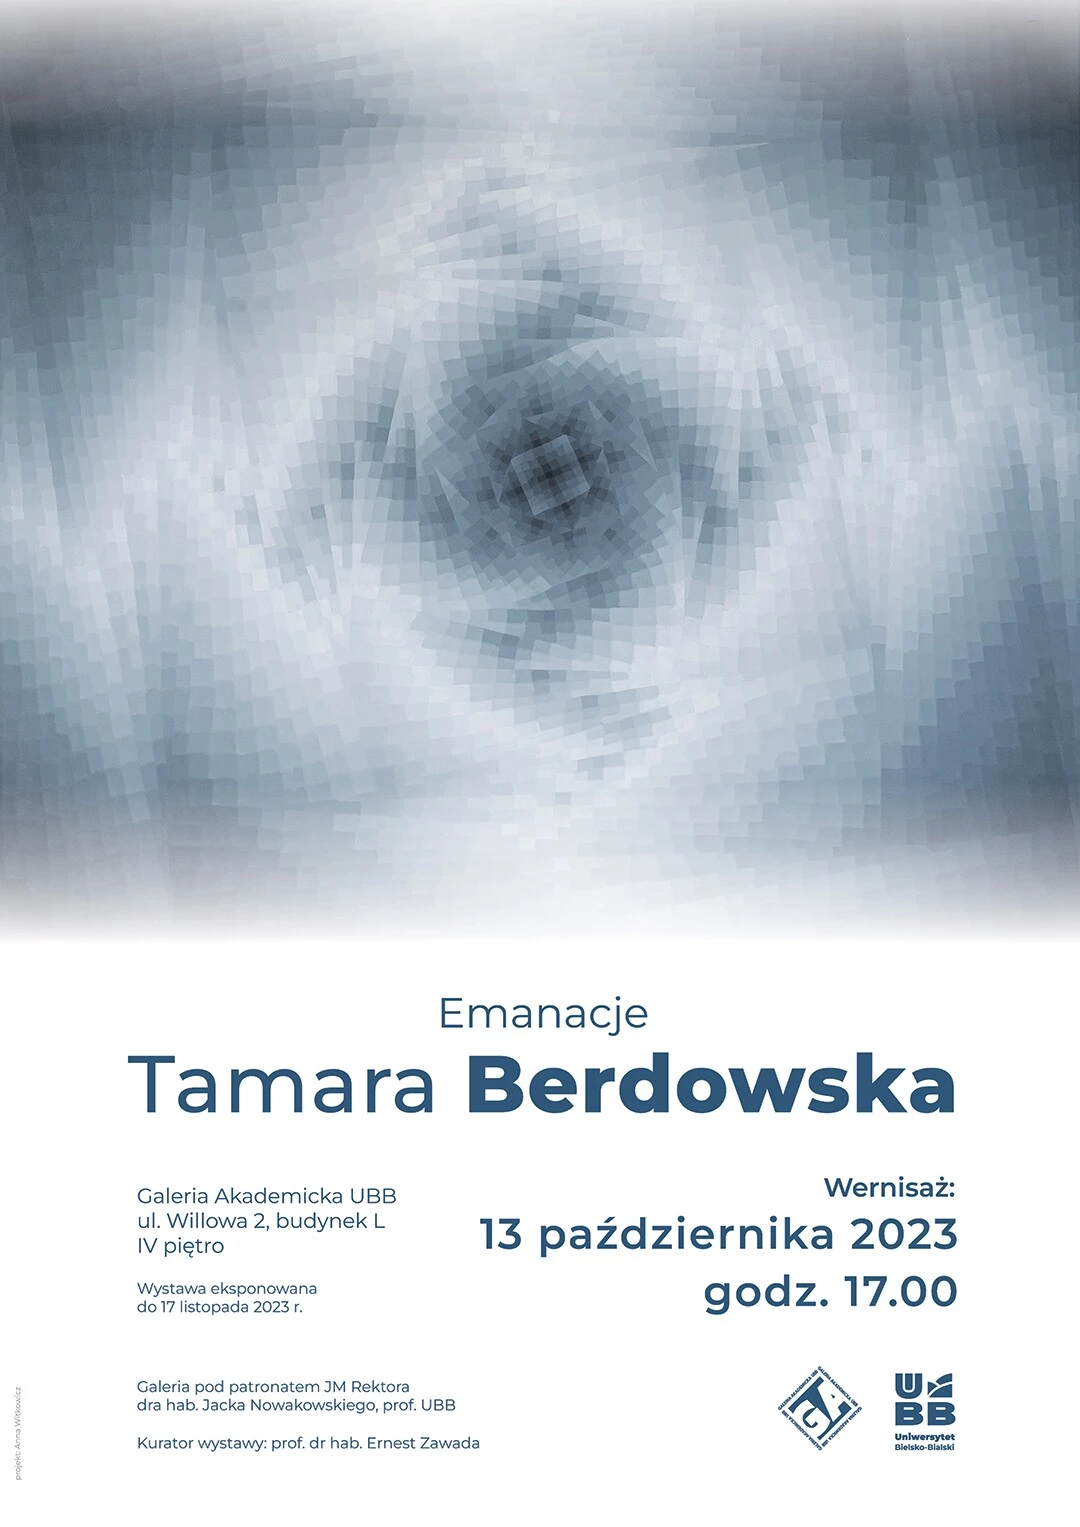 t_berdowska-002.webp